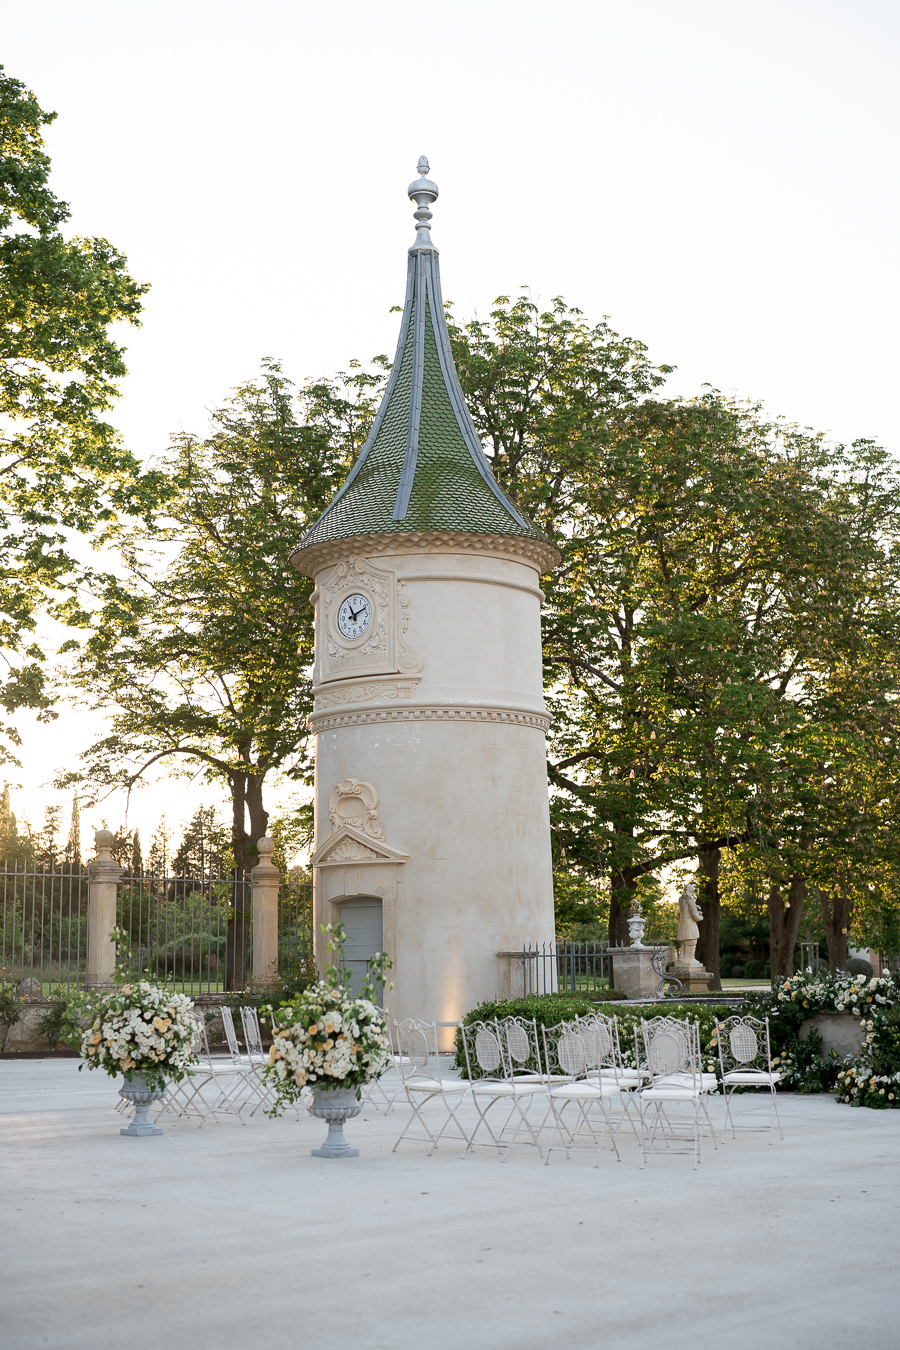 Albe Editions - Blog mariage - Wedding - Provence - Château de Fonscolombes - Lisa Photographe - moderne, sophistiqué et raffiné